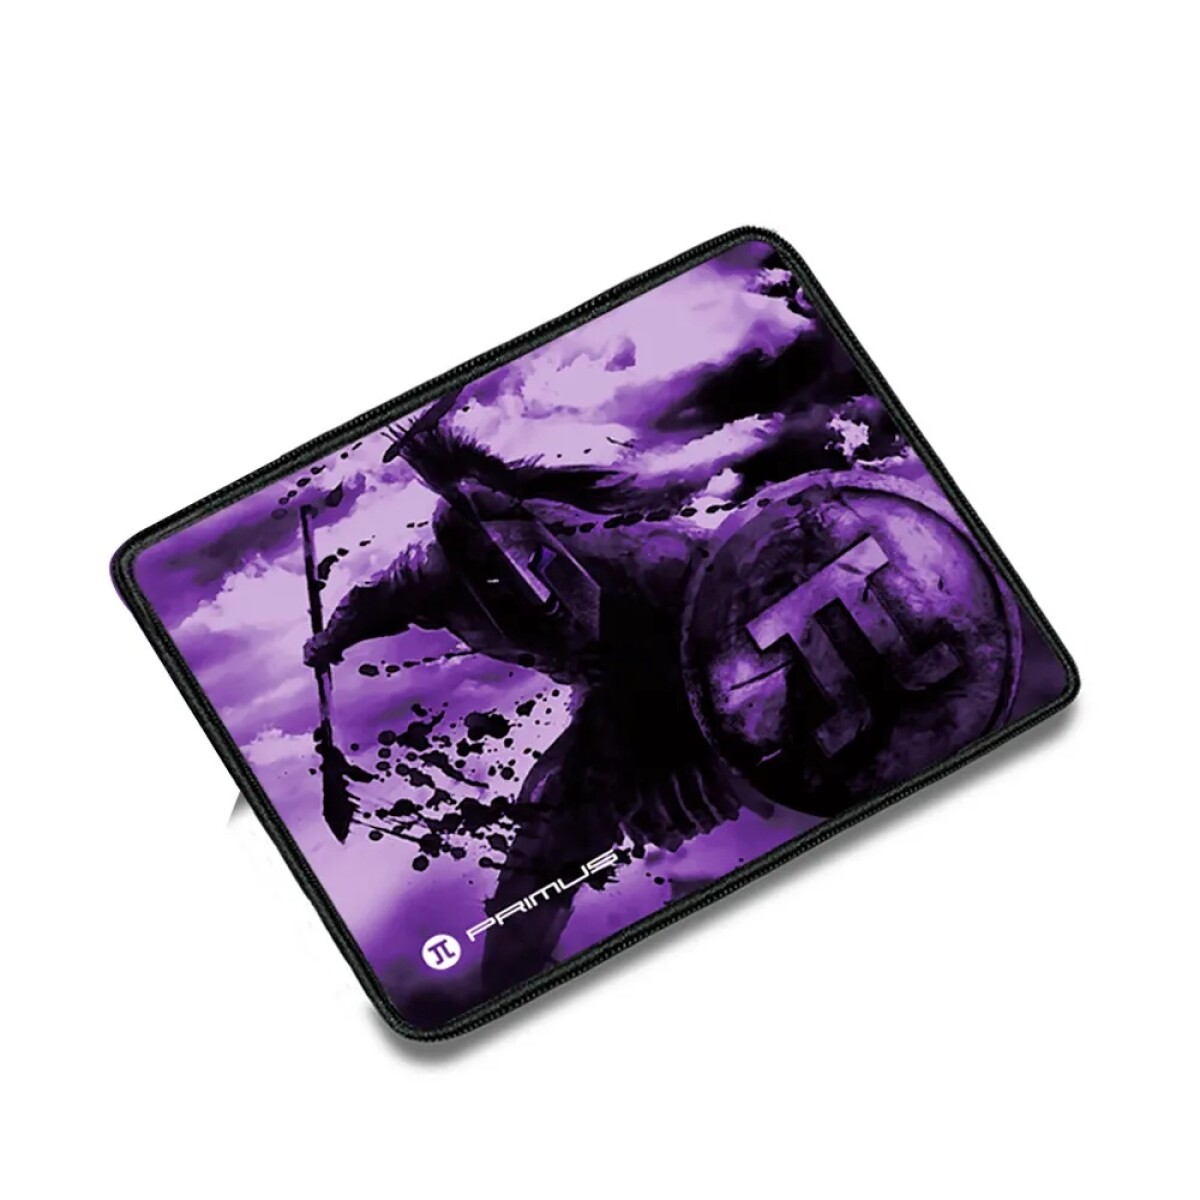 Mouse pad gaming primus arena l - 40cm x 32cm - Diseño 